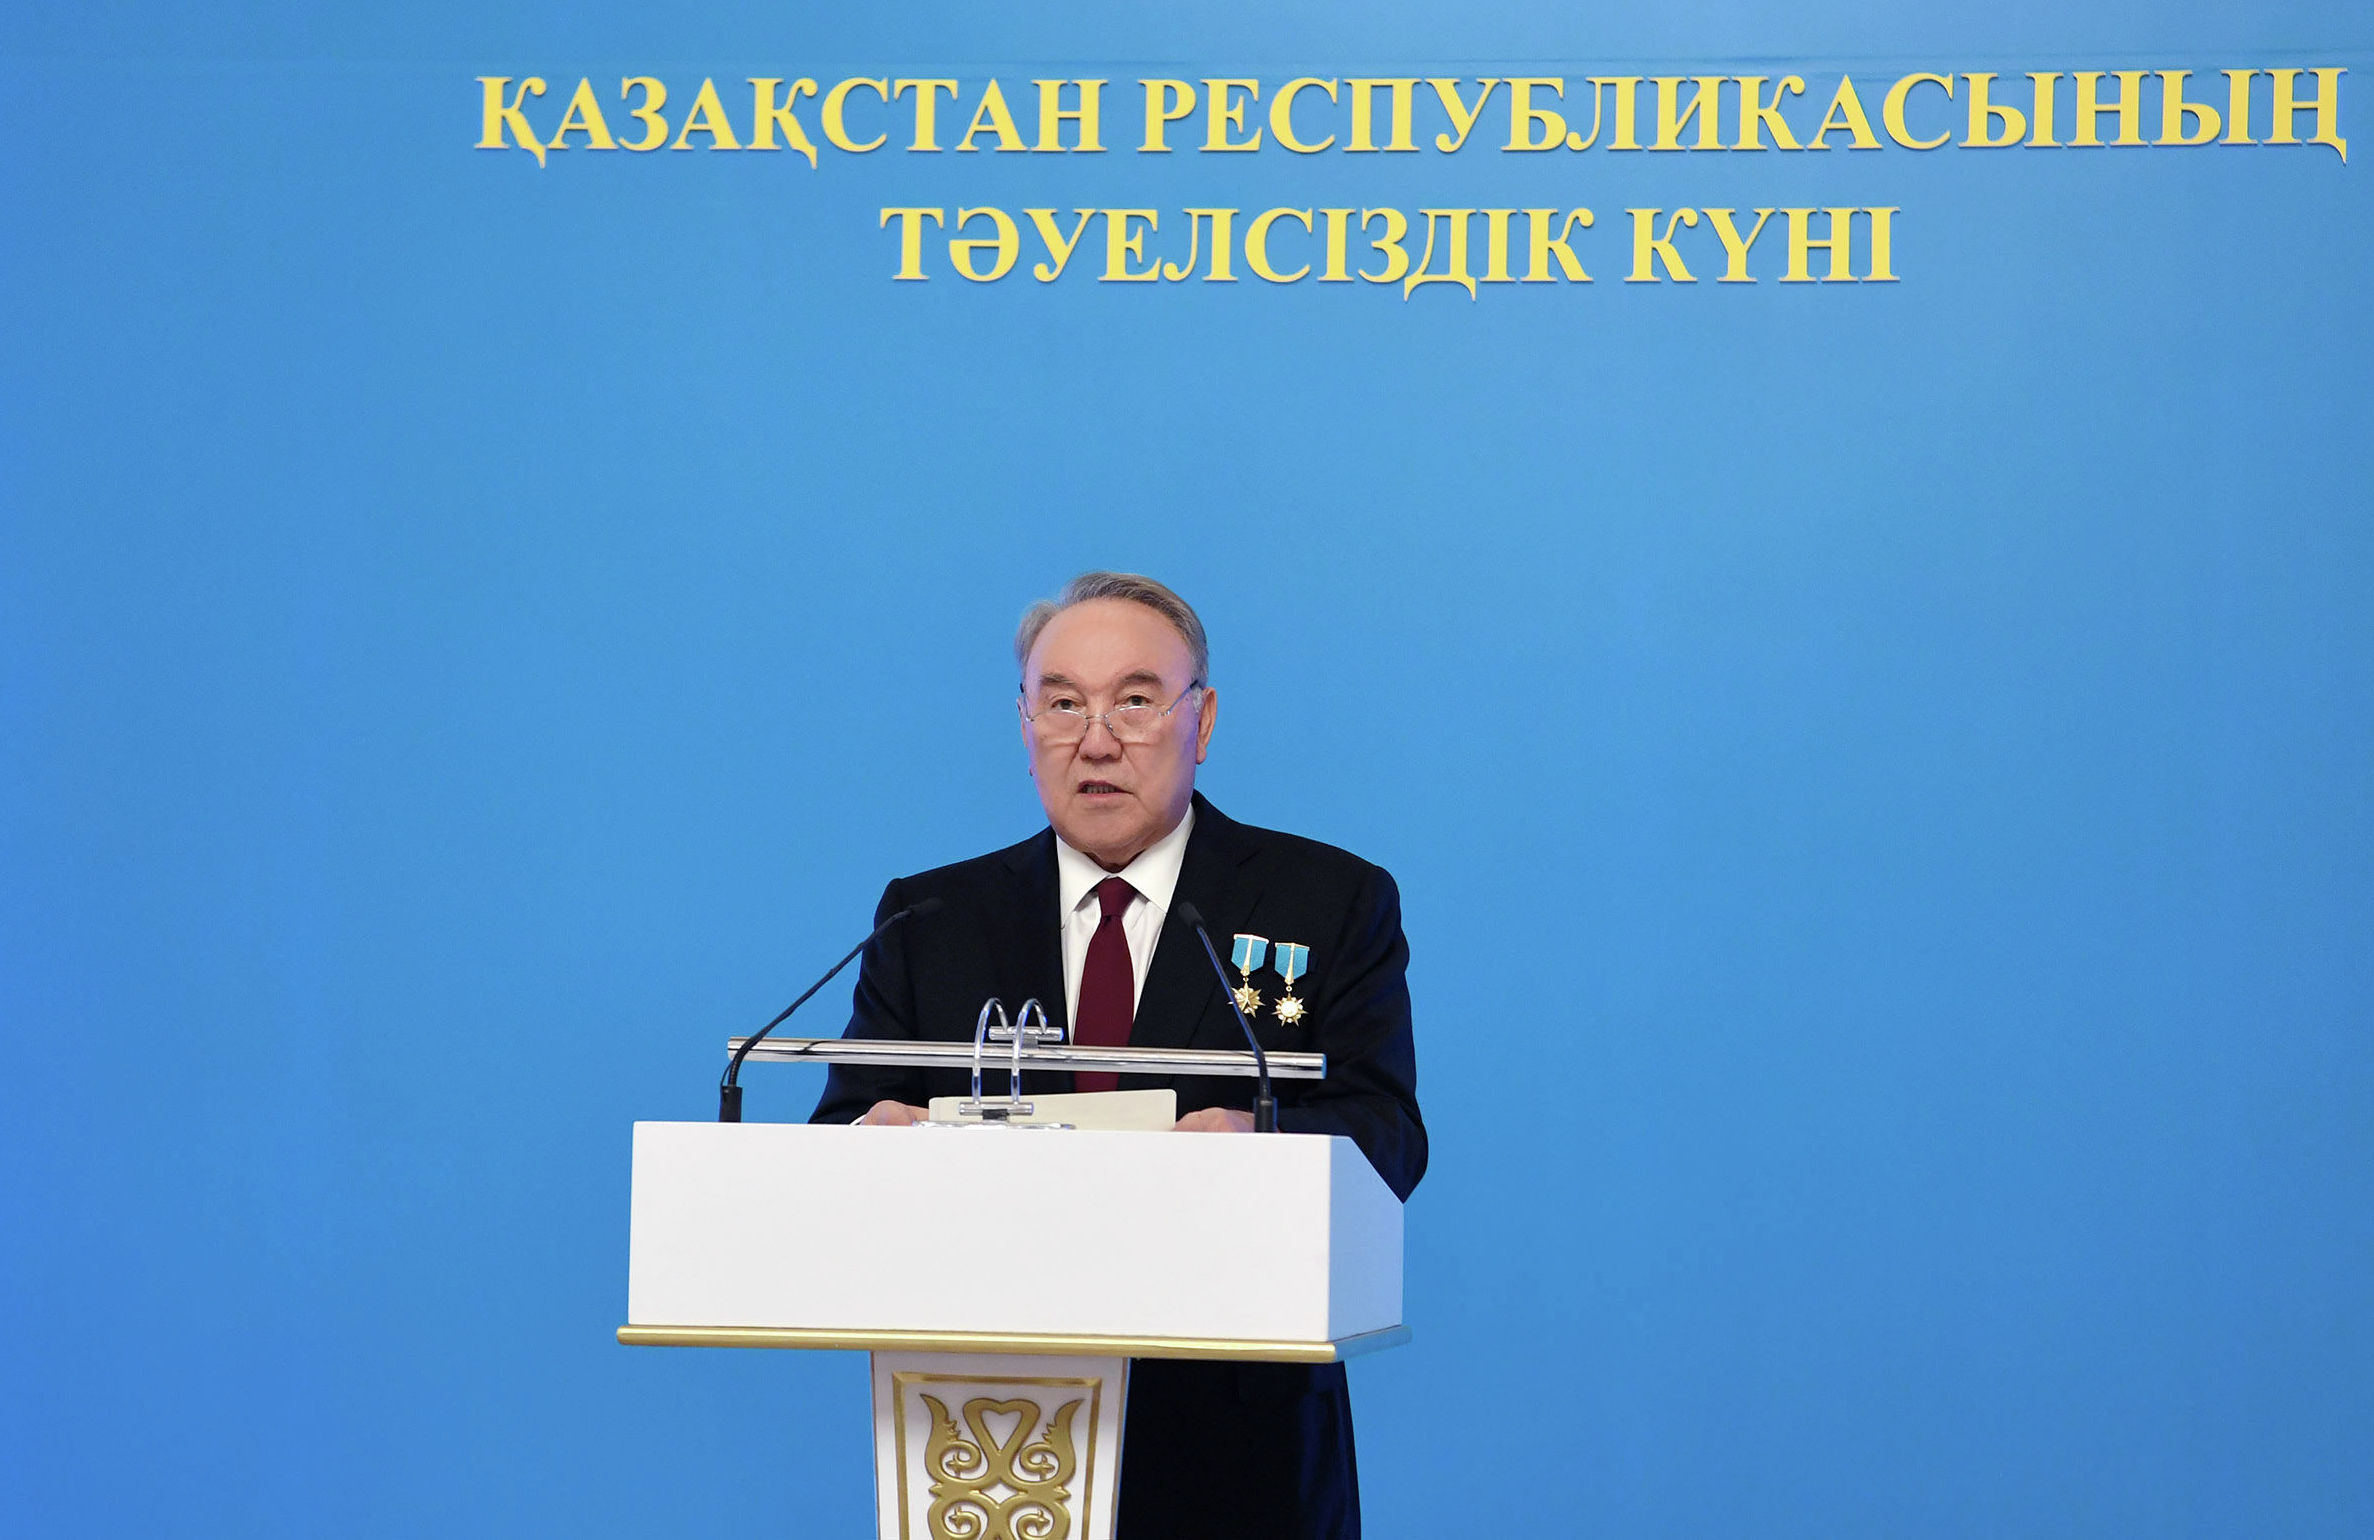 Нурсултан Назарбаев во время торжественного концерта накануне Дня независимости Казахстана